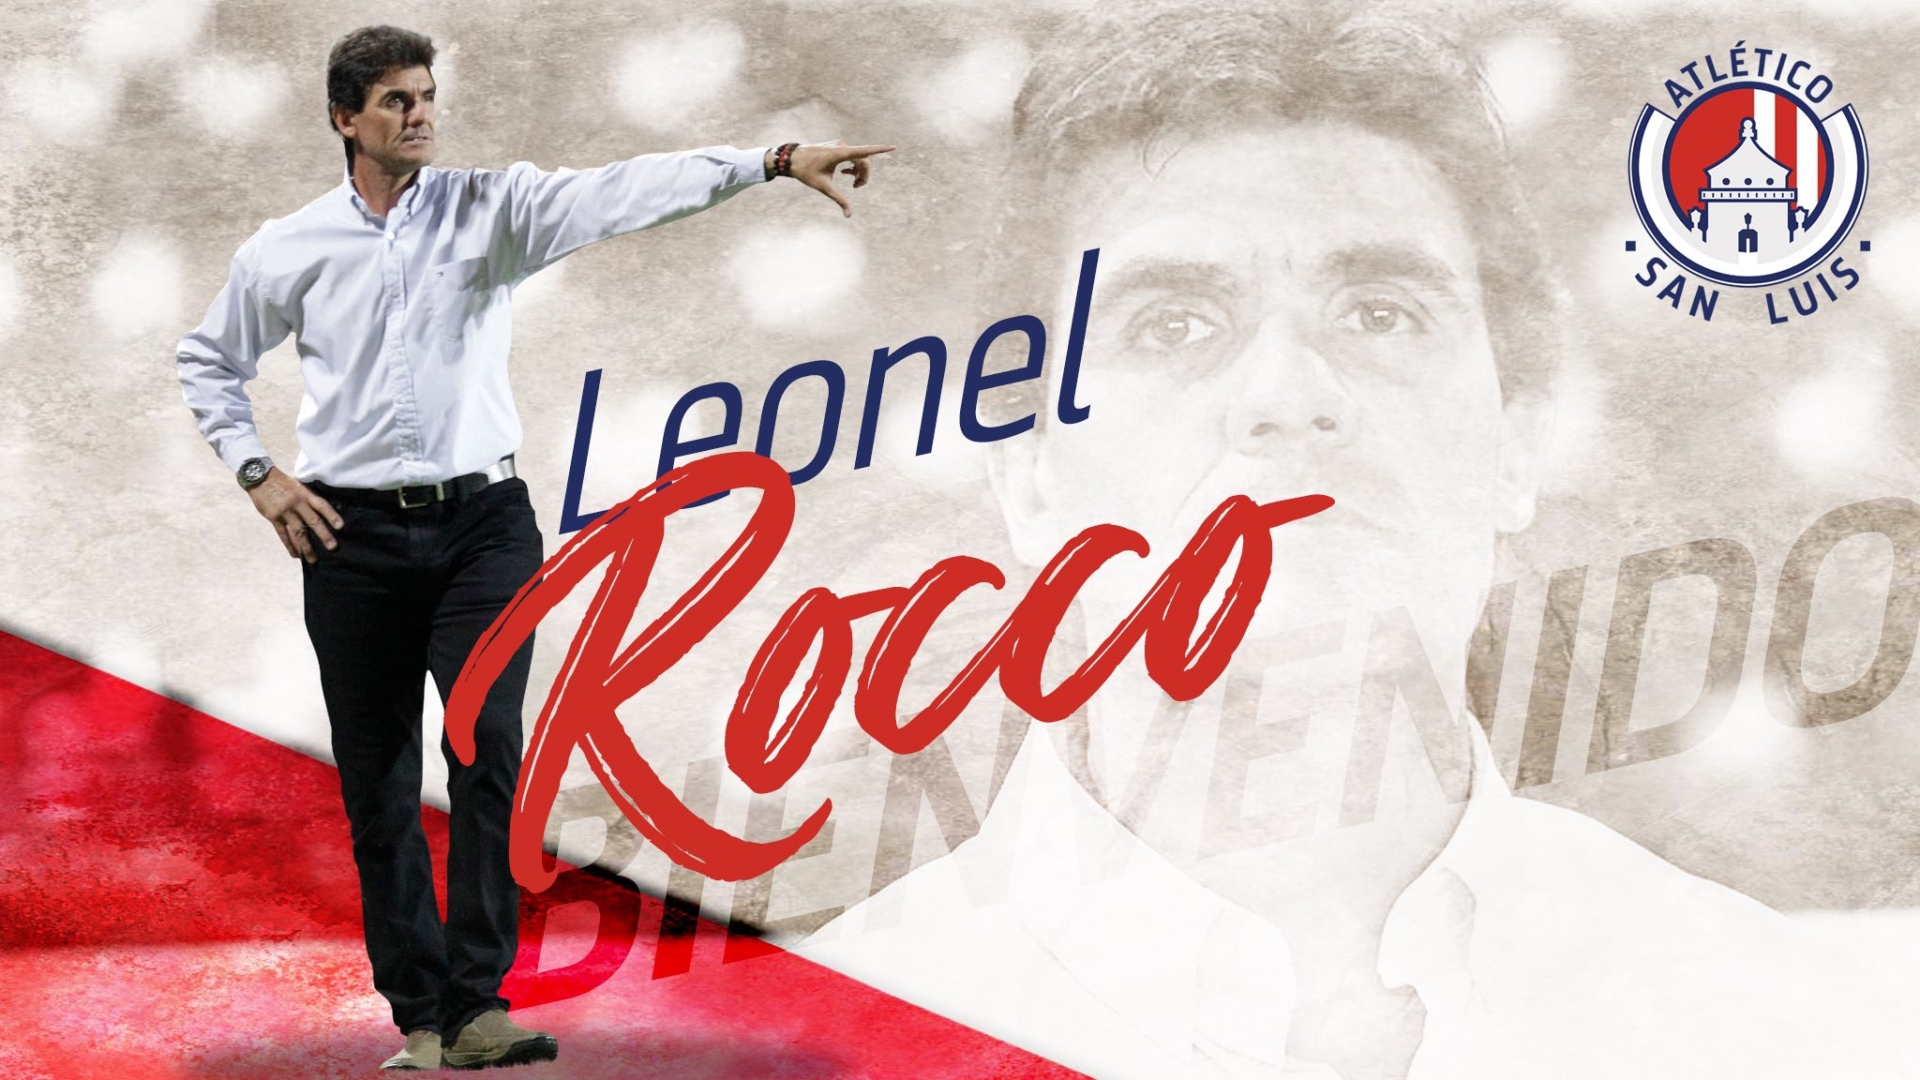 Leonel Rocco fue anunciado como nuevo entrenador del Atlético de San Luis de la Liga MX (Foto: Twitter @AtletideSanLuis)